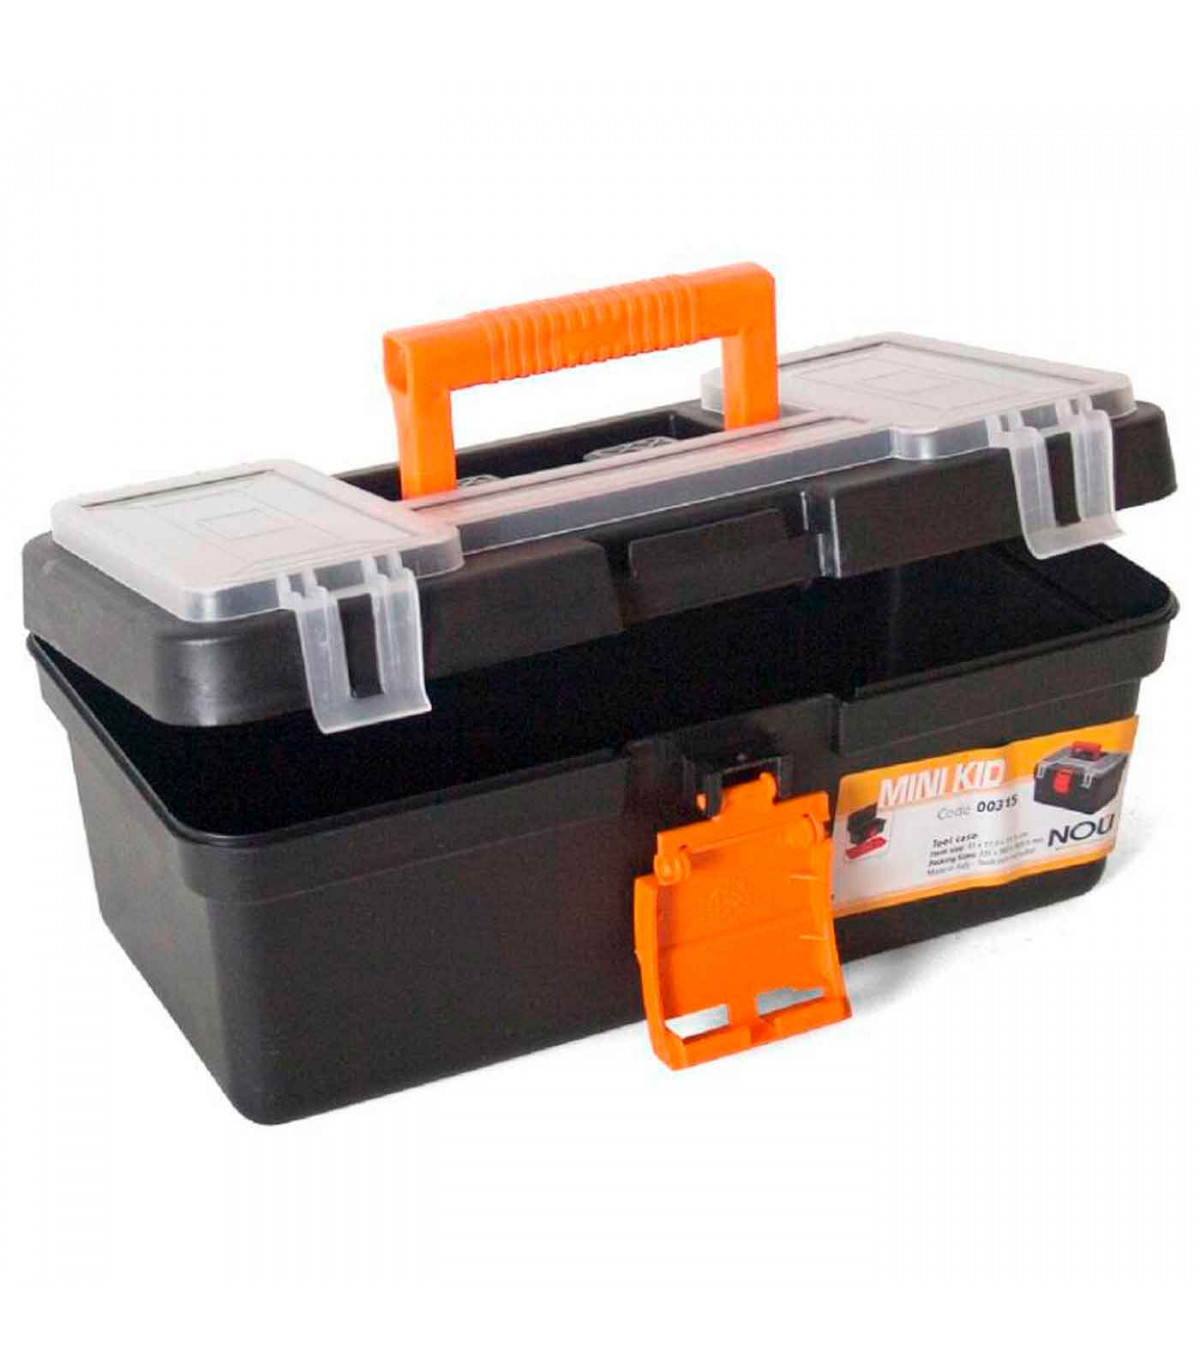  Goodyear Mini caja de herramientas de 12 pulgadas [pequeña]  para herramientas de pasatiempos, caja de almacenamiento de accesorios con  asa, bandeja interior extraíble, ligera y fácil de transportar, pestillo a  presión